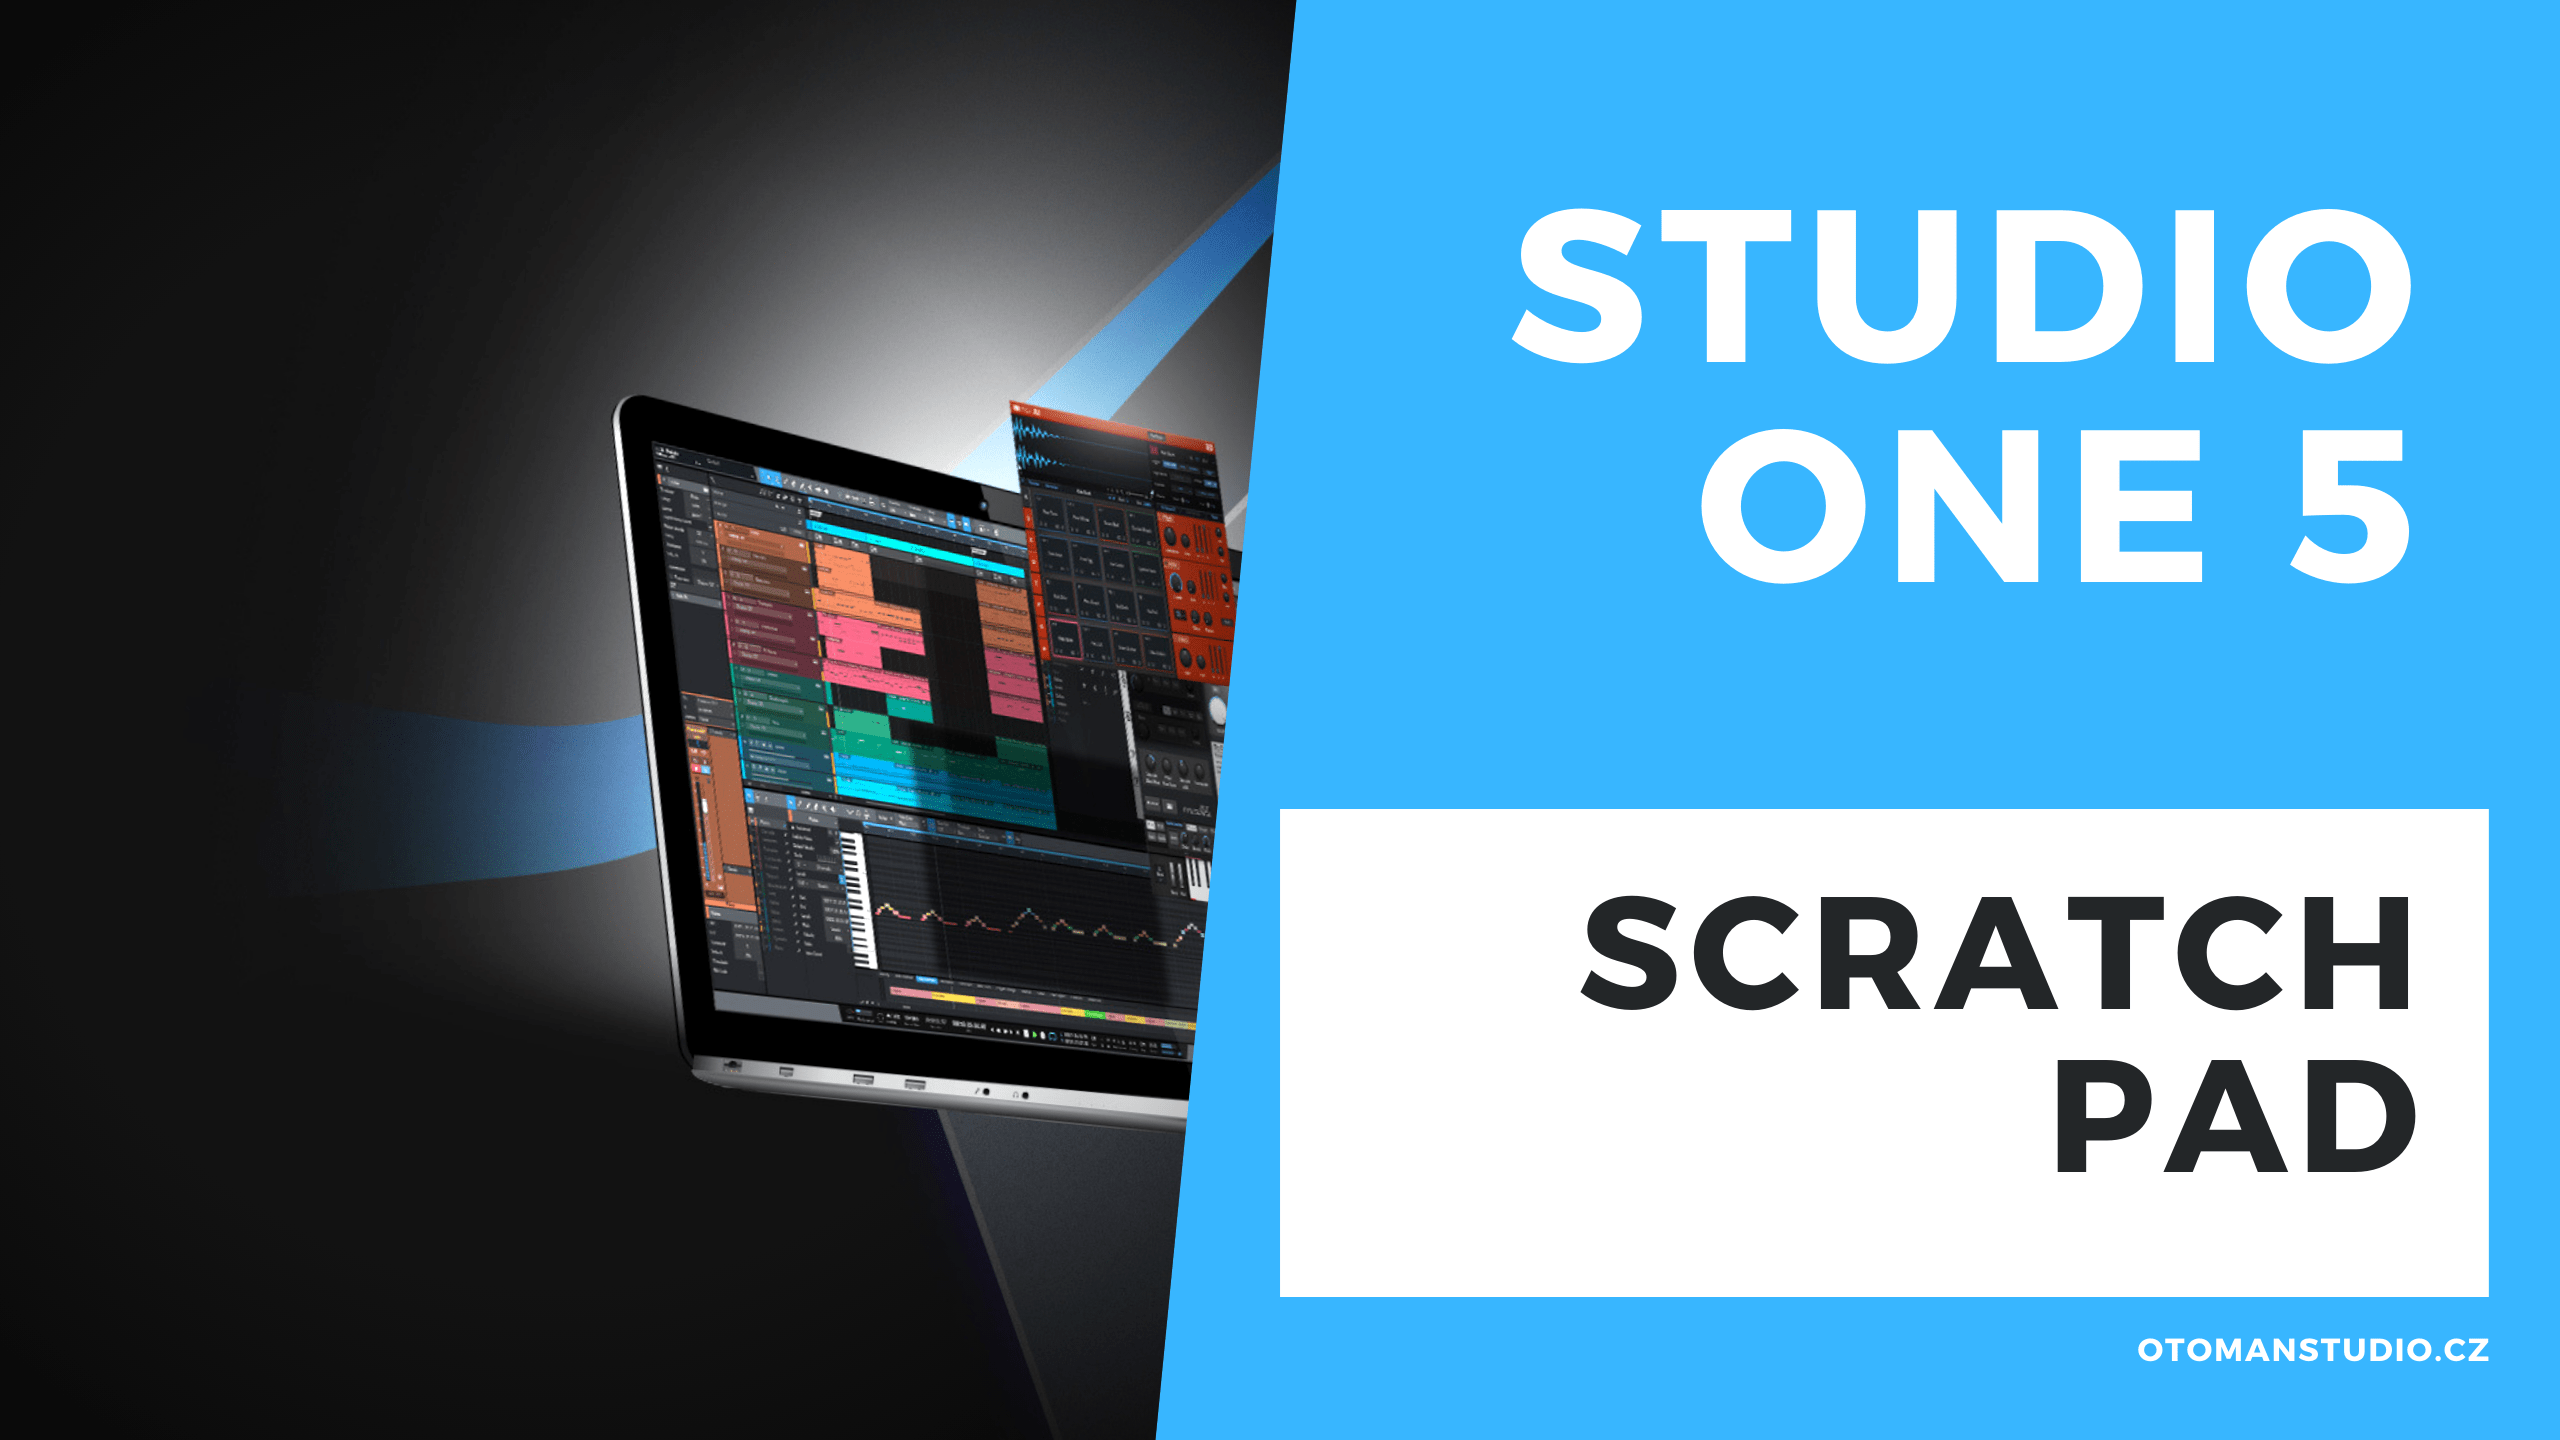 Studio One 5 – Scratch Pad